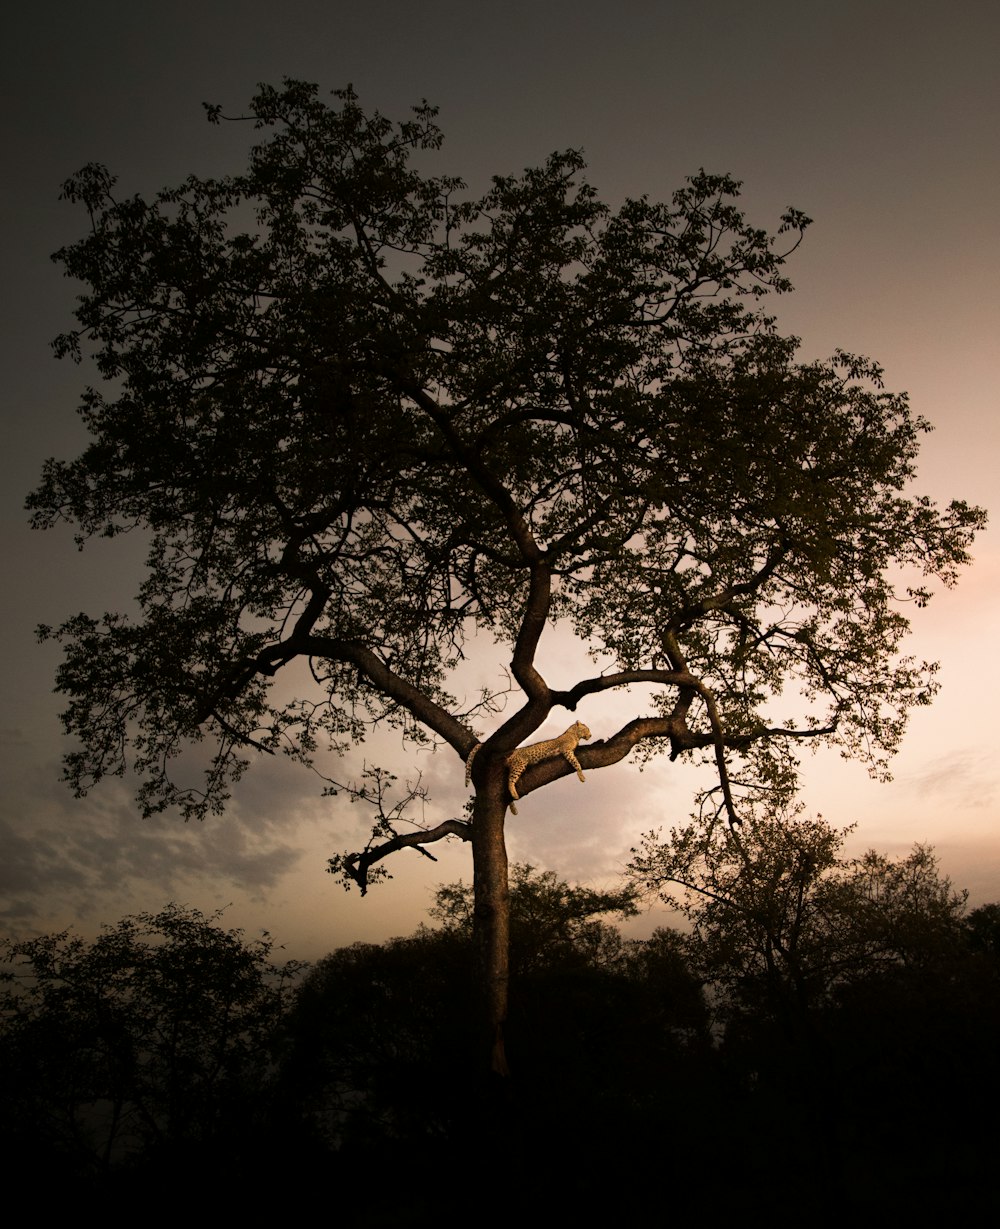 나무에 쉬고 있는 표범의 풍경